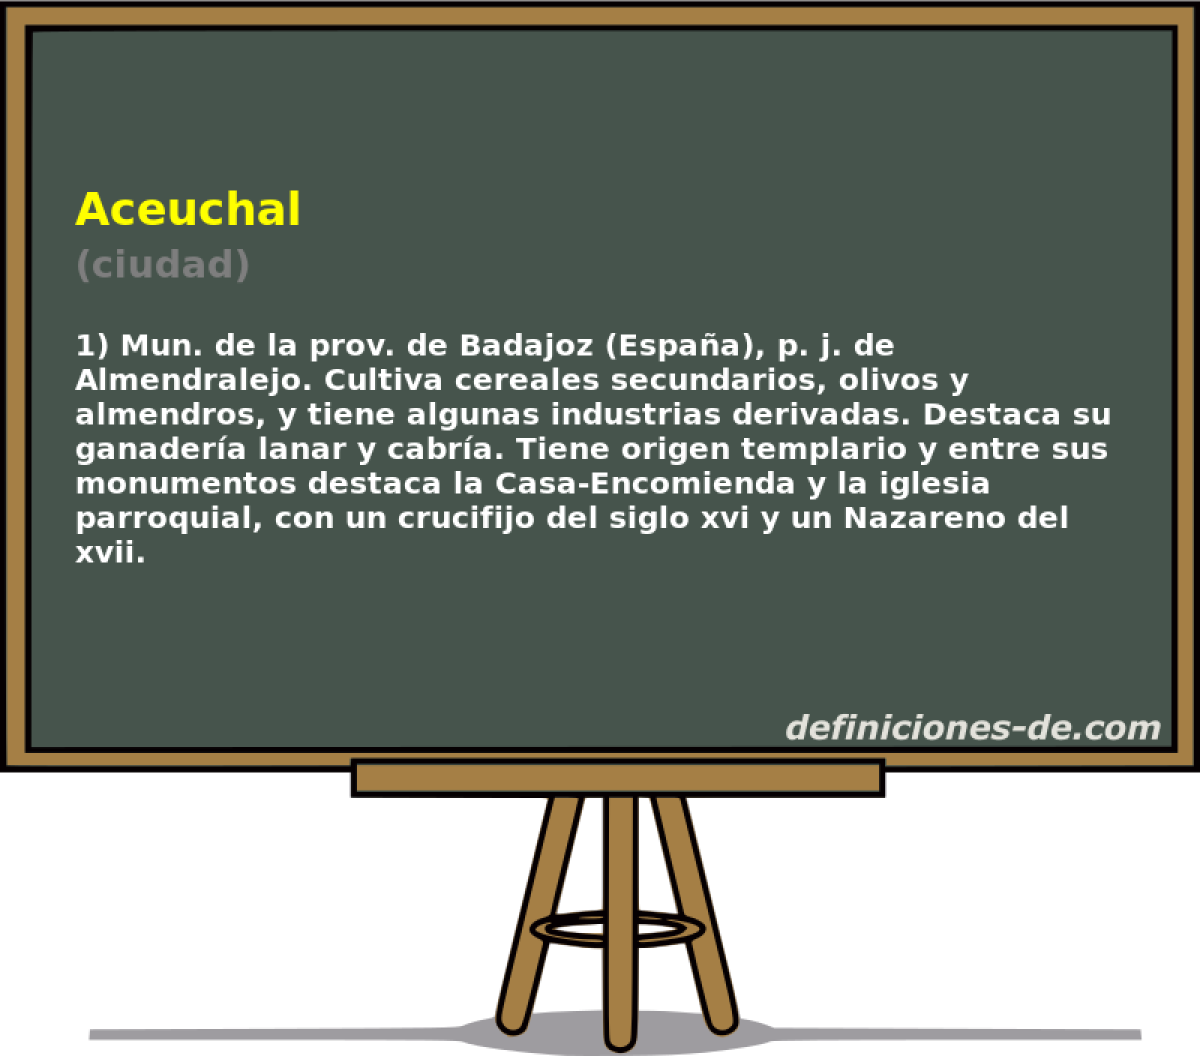 Aceuchal (ciudad)